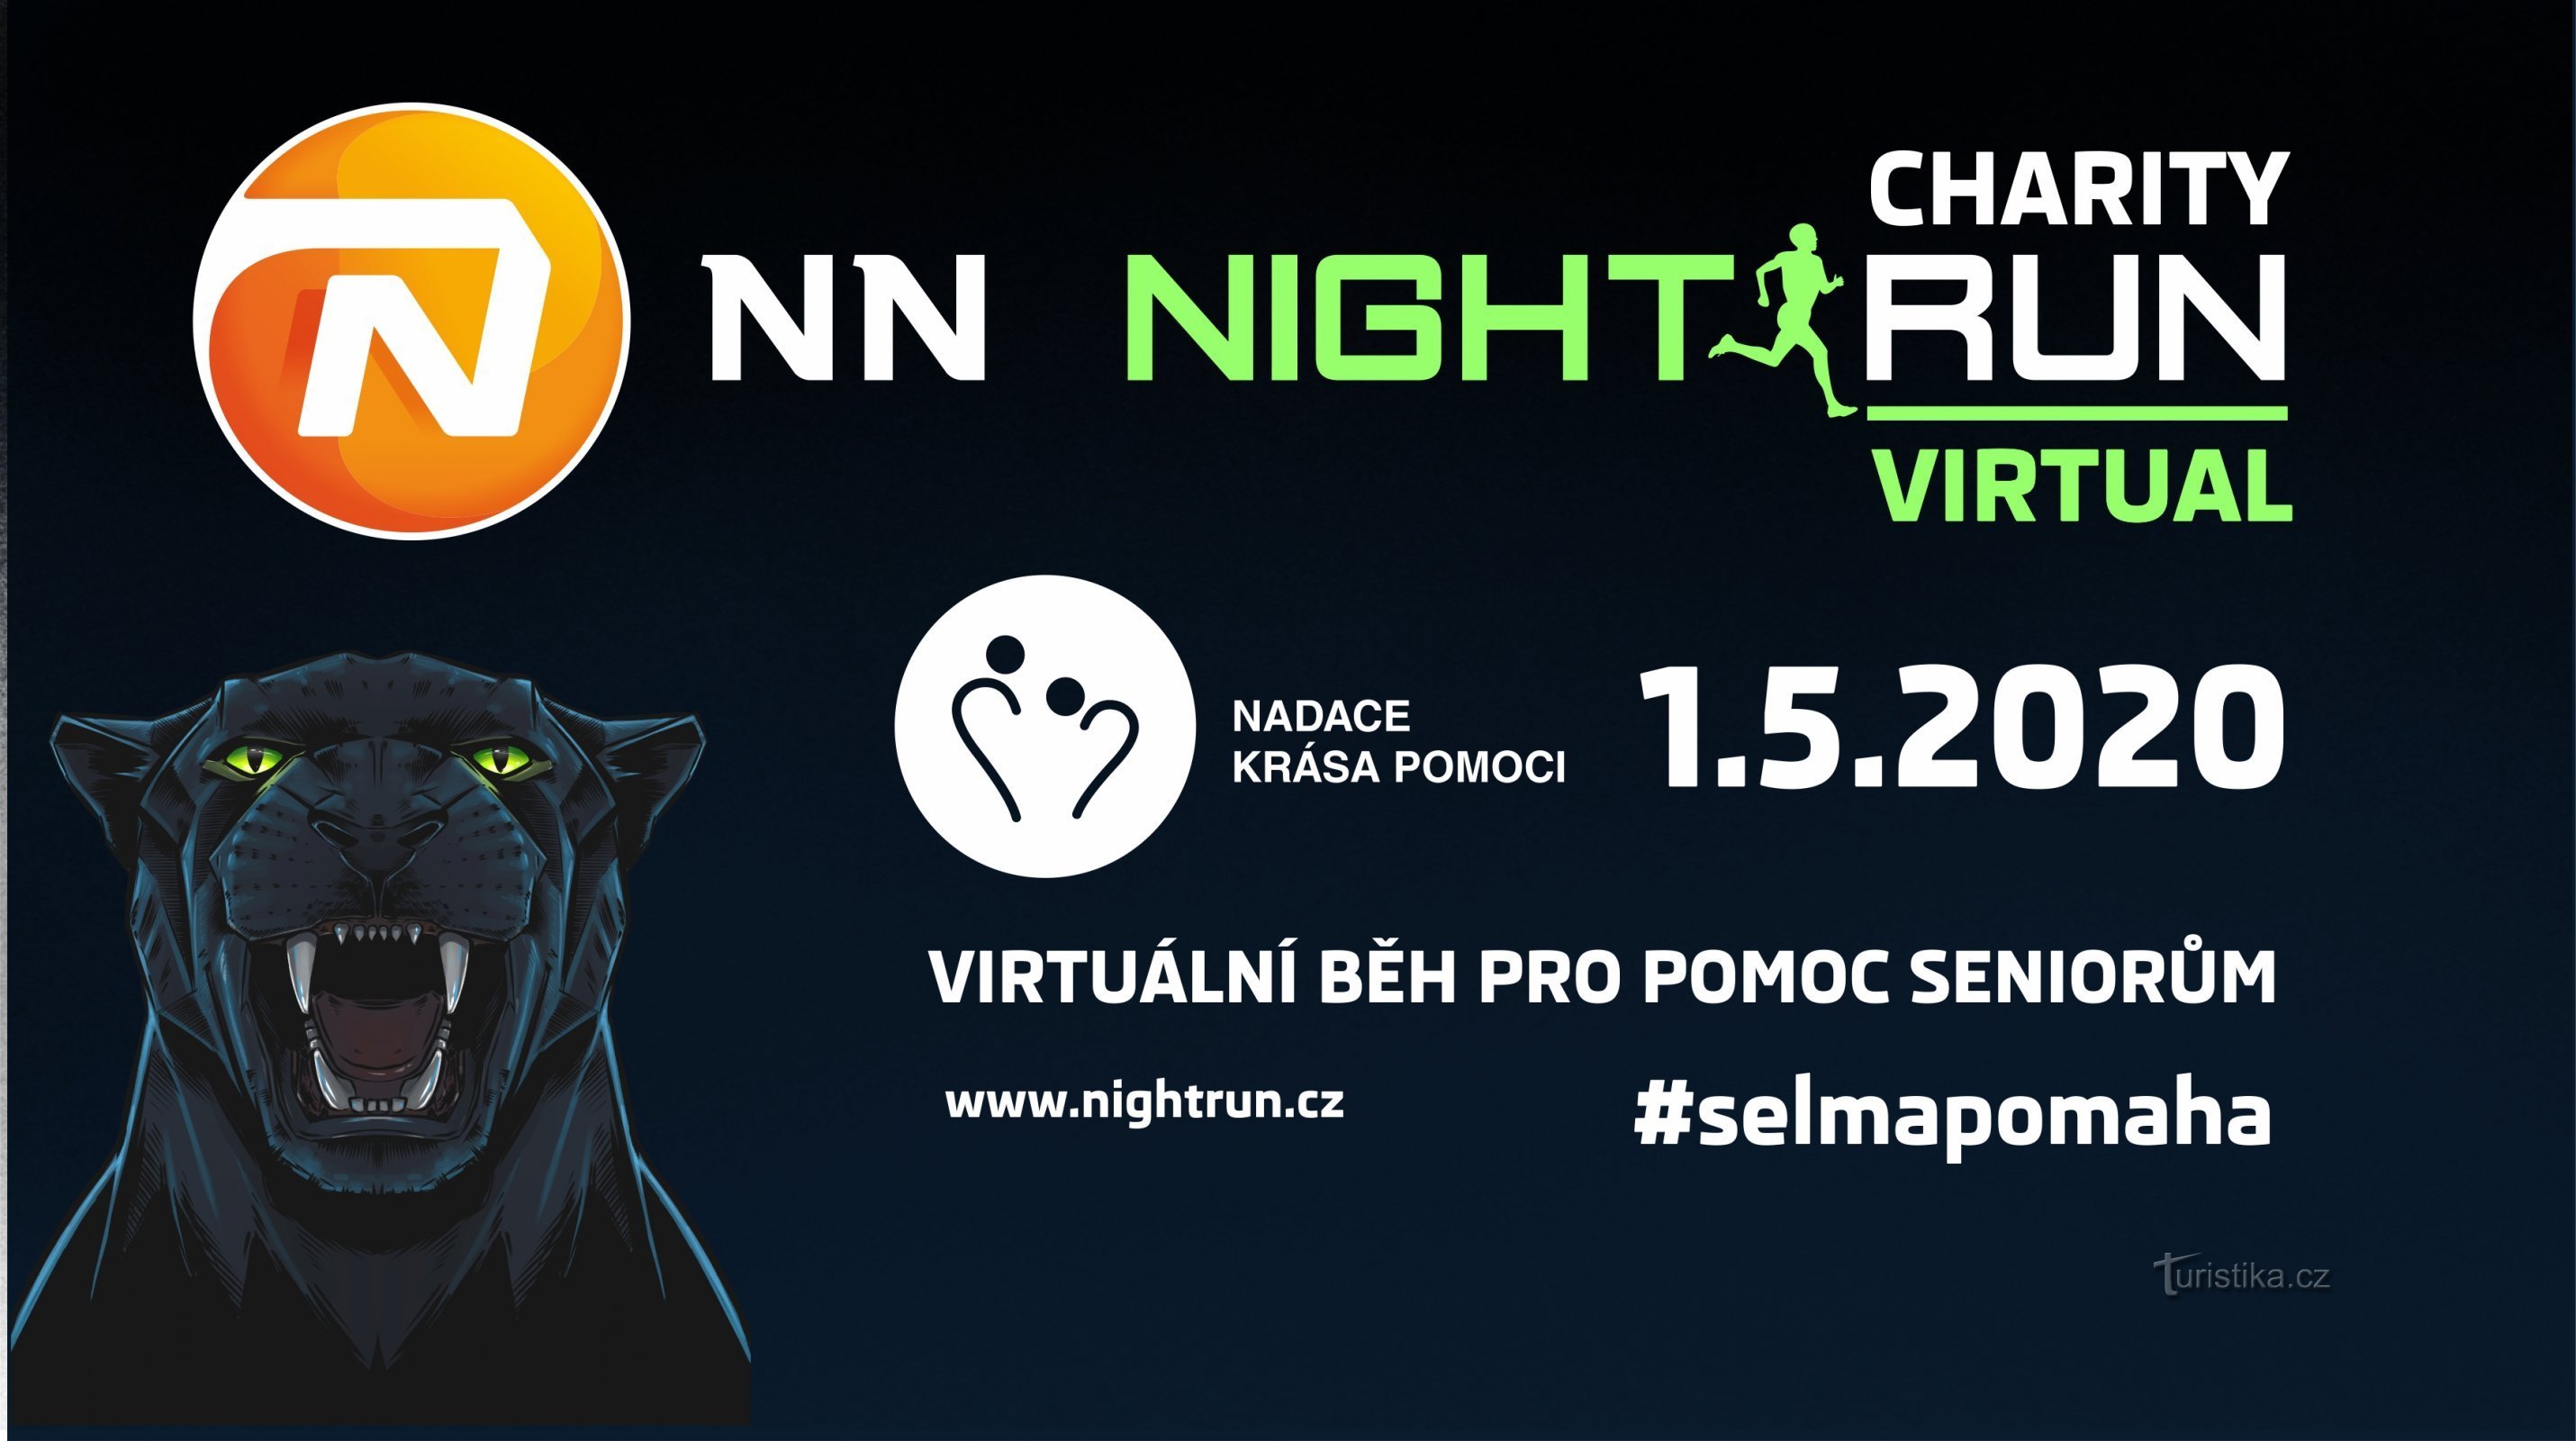 Virtual Charity NN Night Run, một cuộc chạy từ thiện để giúp đỡ người già